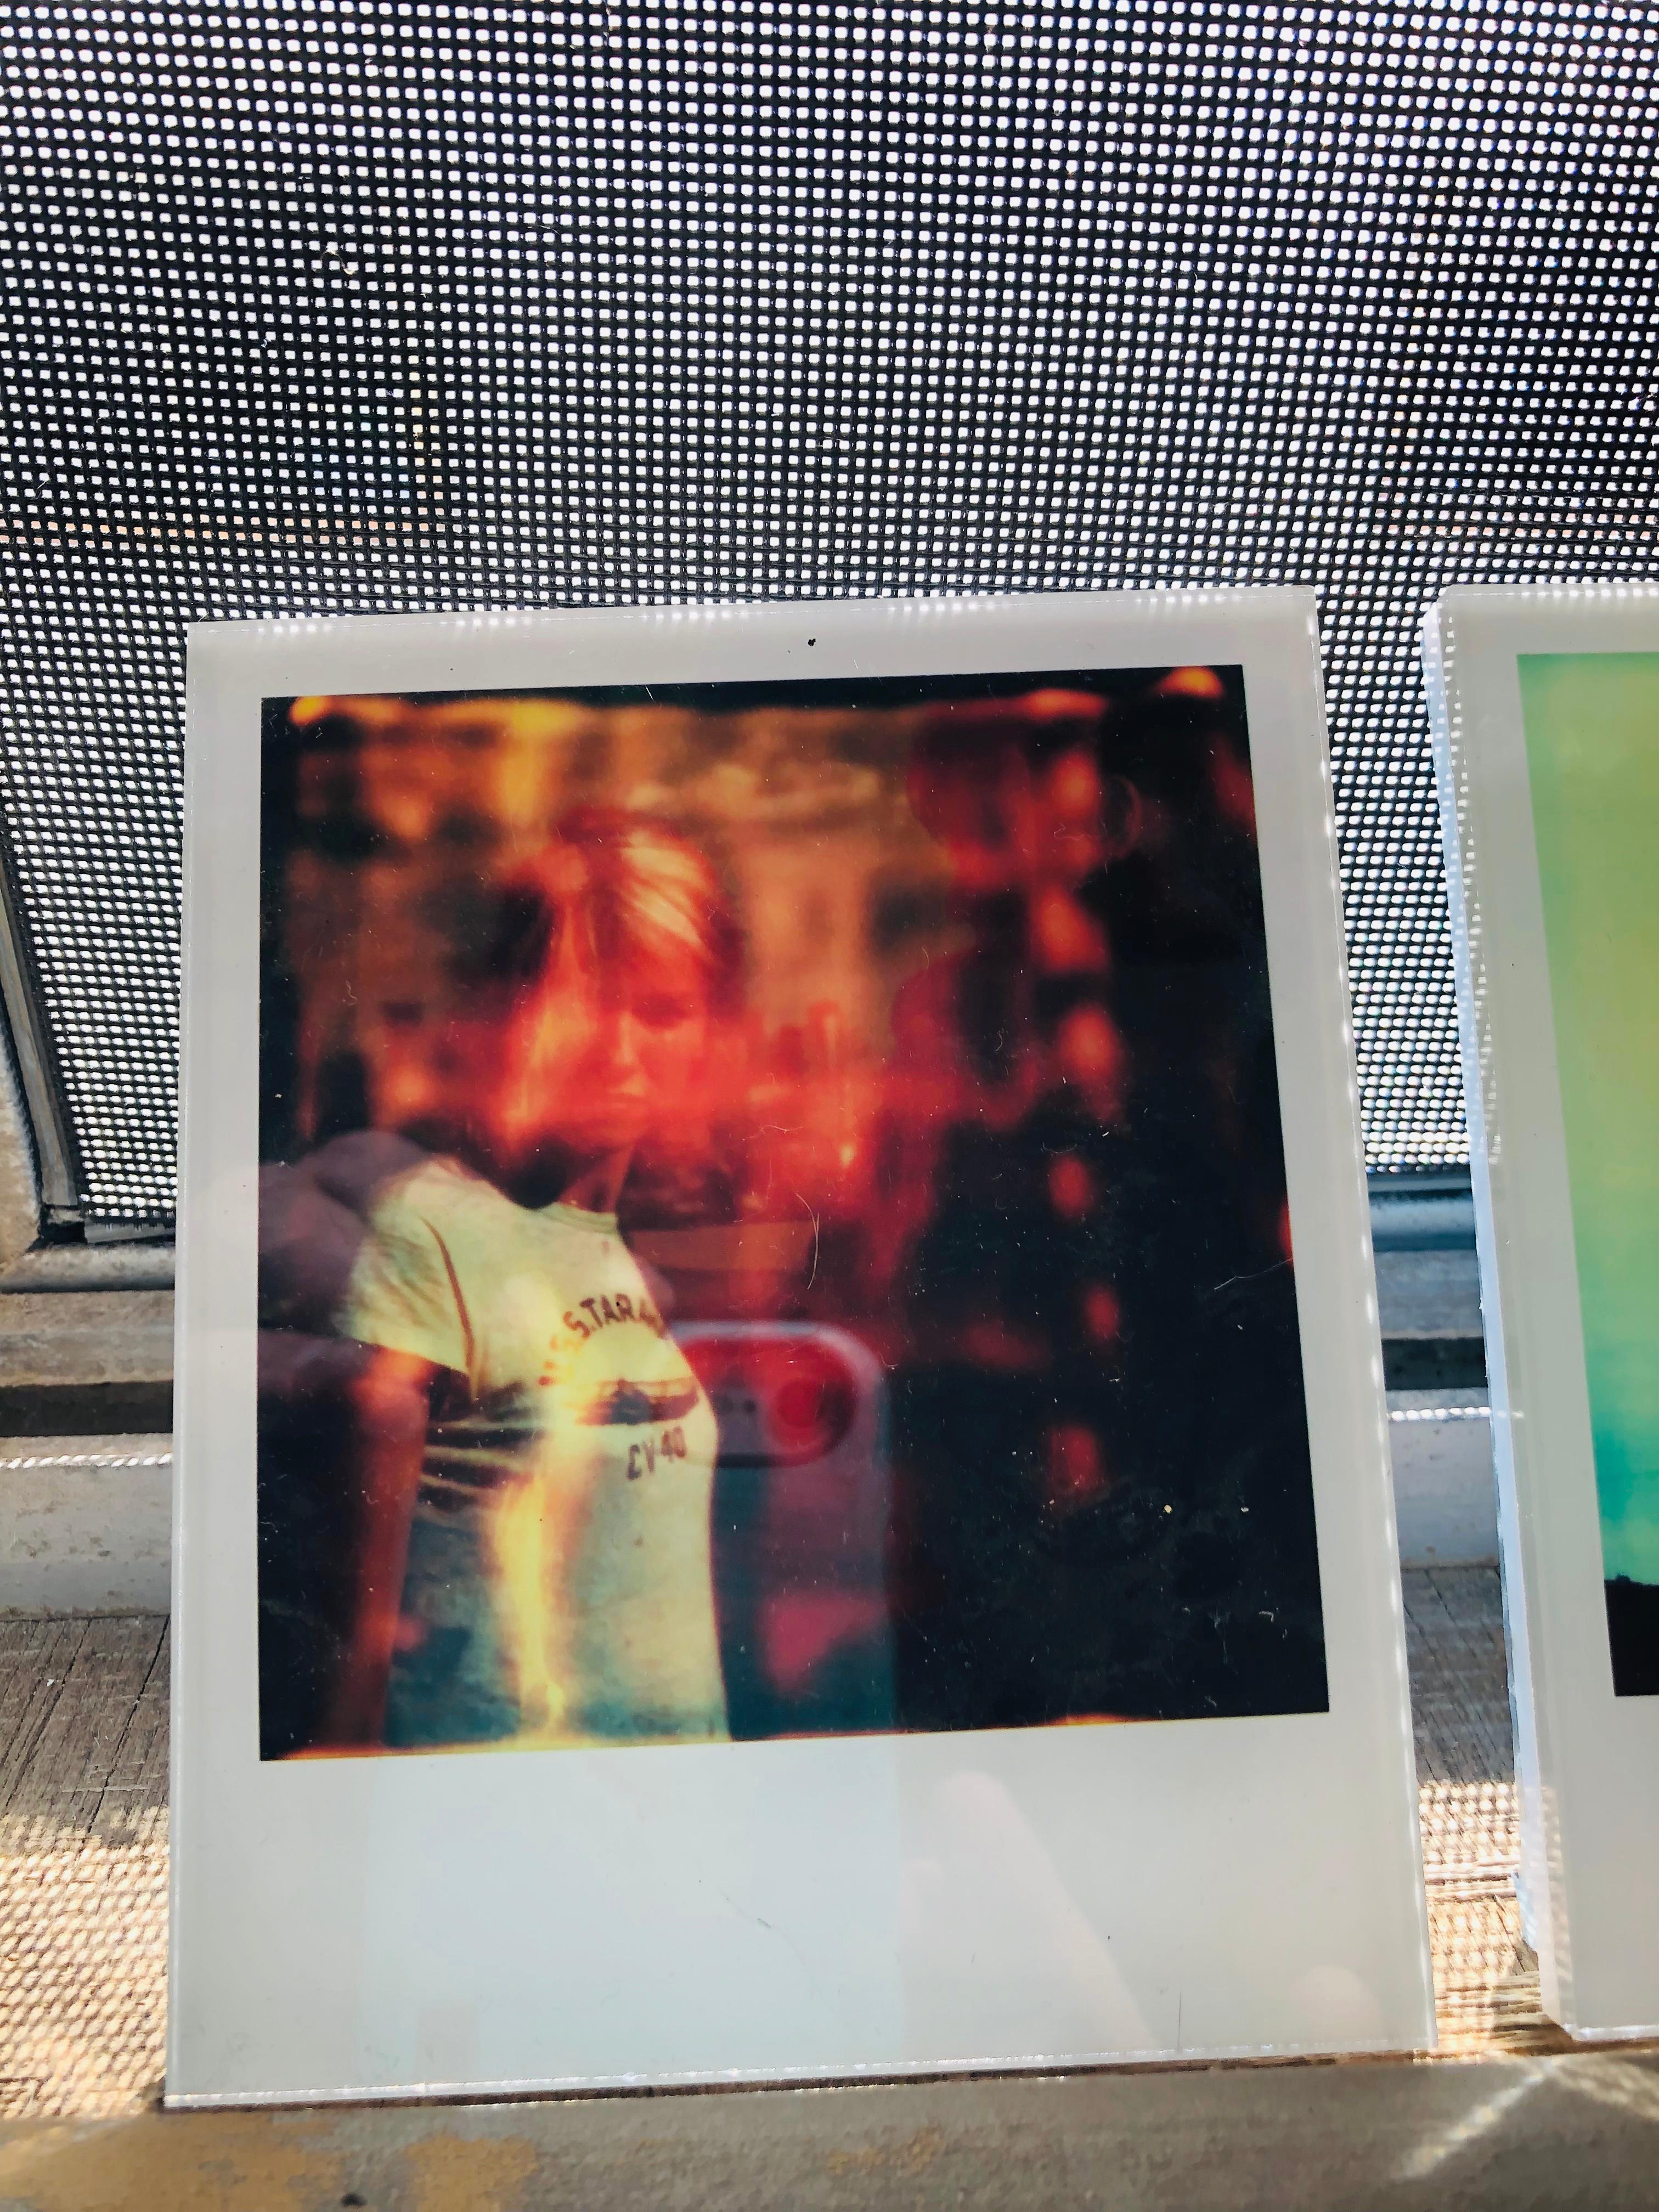 Die Minis von Stefanie Schneider
lila" (Aufenthalt), 2006
verso signiert und Signaturmarke
Digitale Lambda-Farbfotografien auf der Grundlage eines Polaroids

aus dem Film 'Stay' von Marc Forster, in dem Ewan McGregor, Naomi Watts und Ryan Gosling